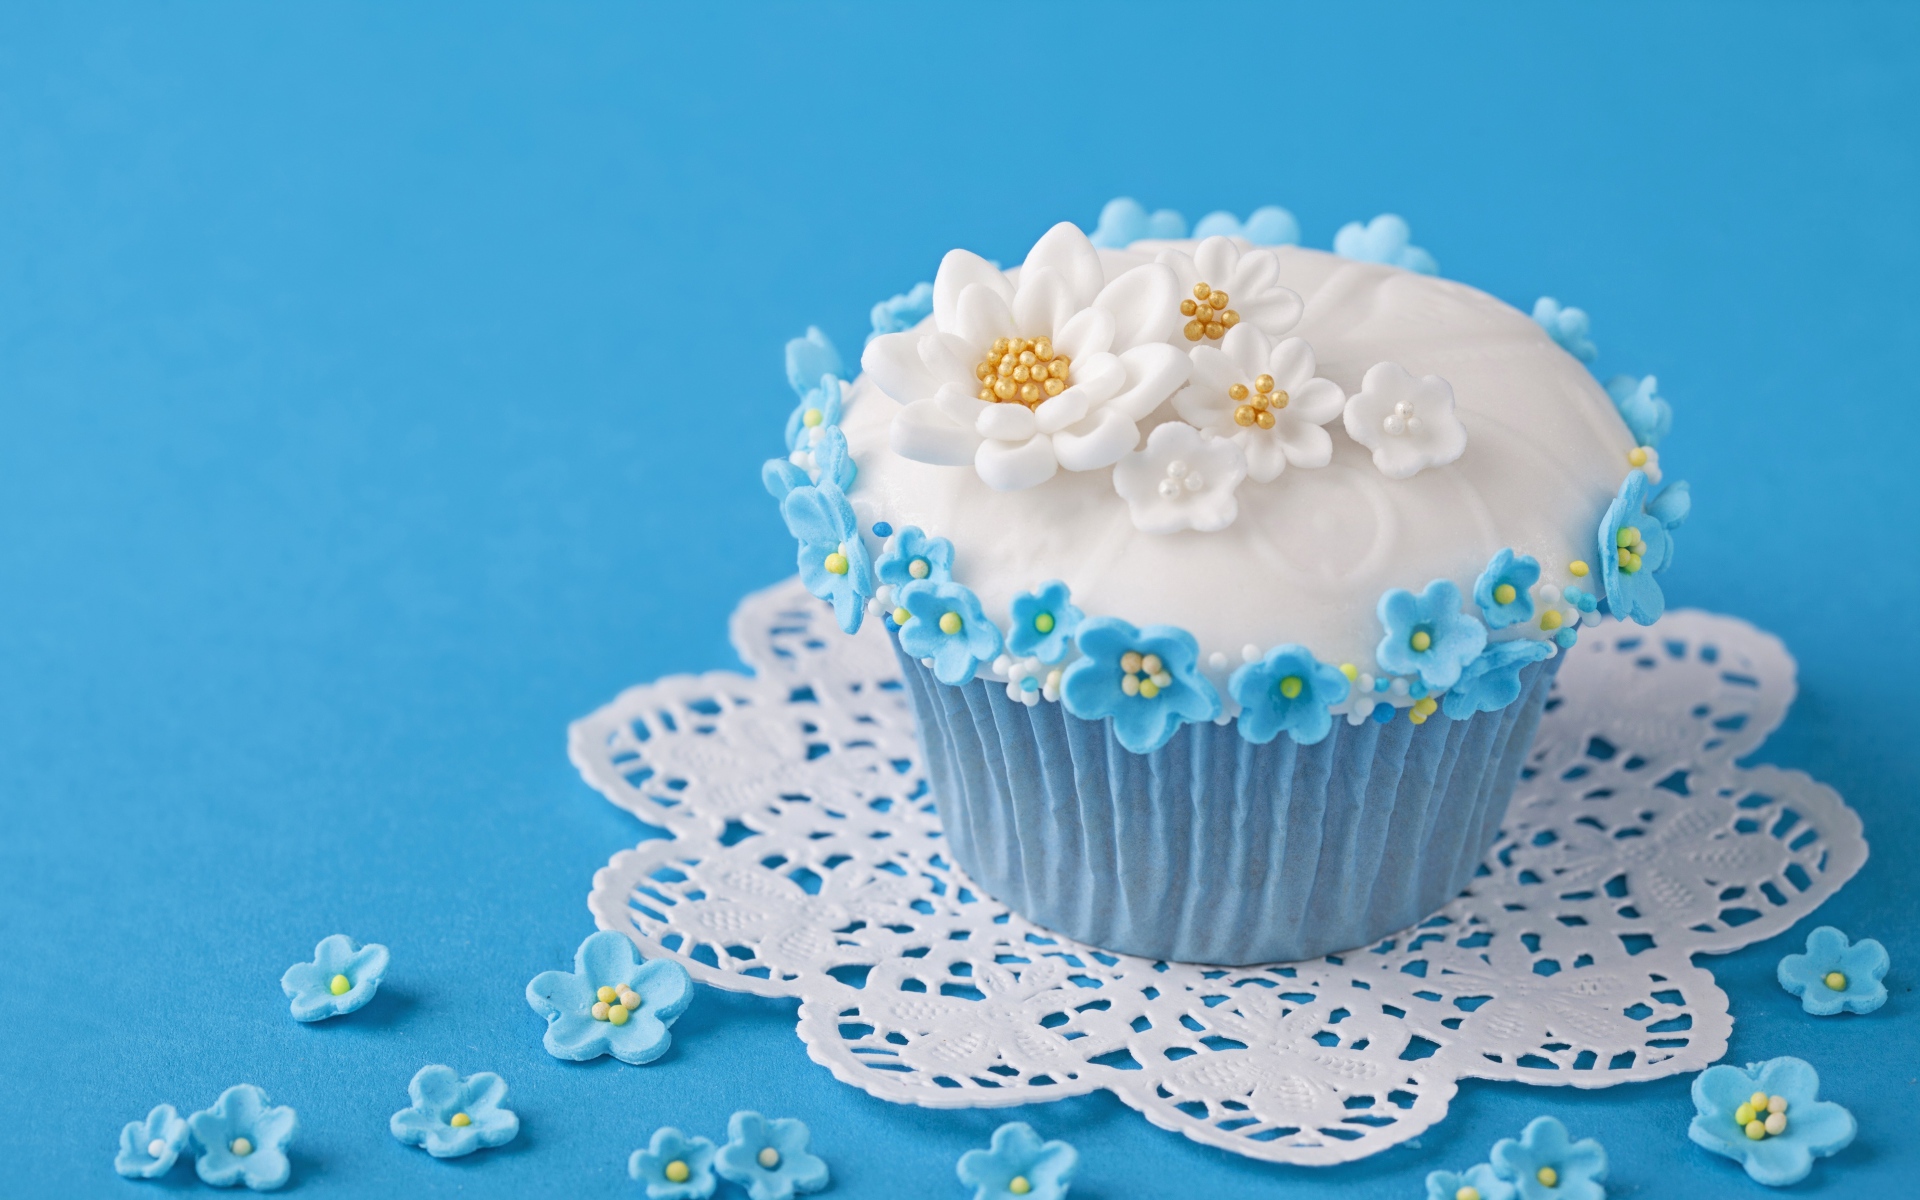 Аппетитный кекс украшен цветами на голубом фоне